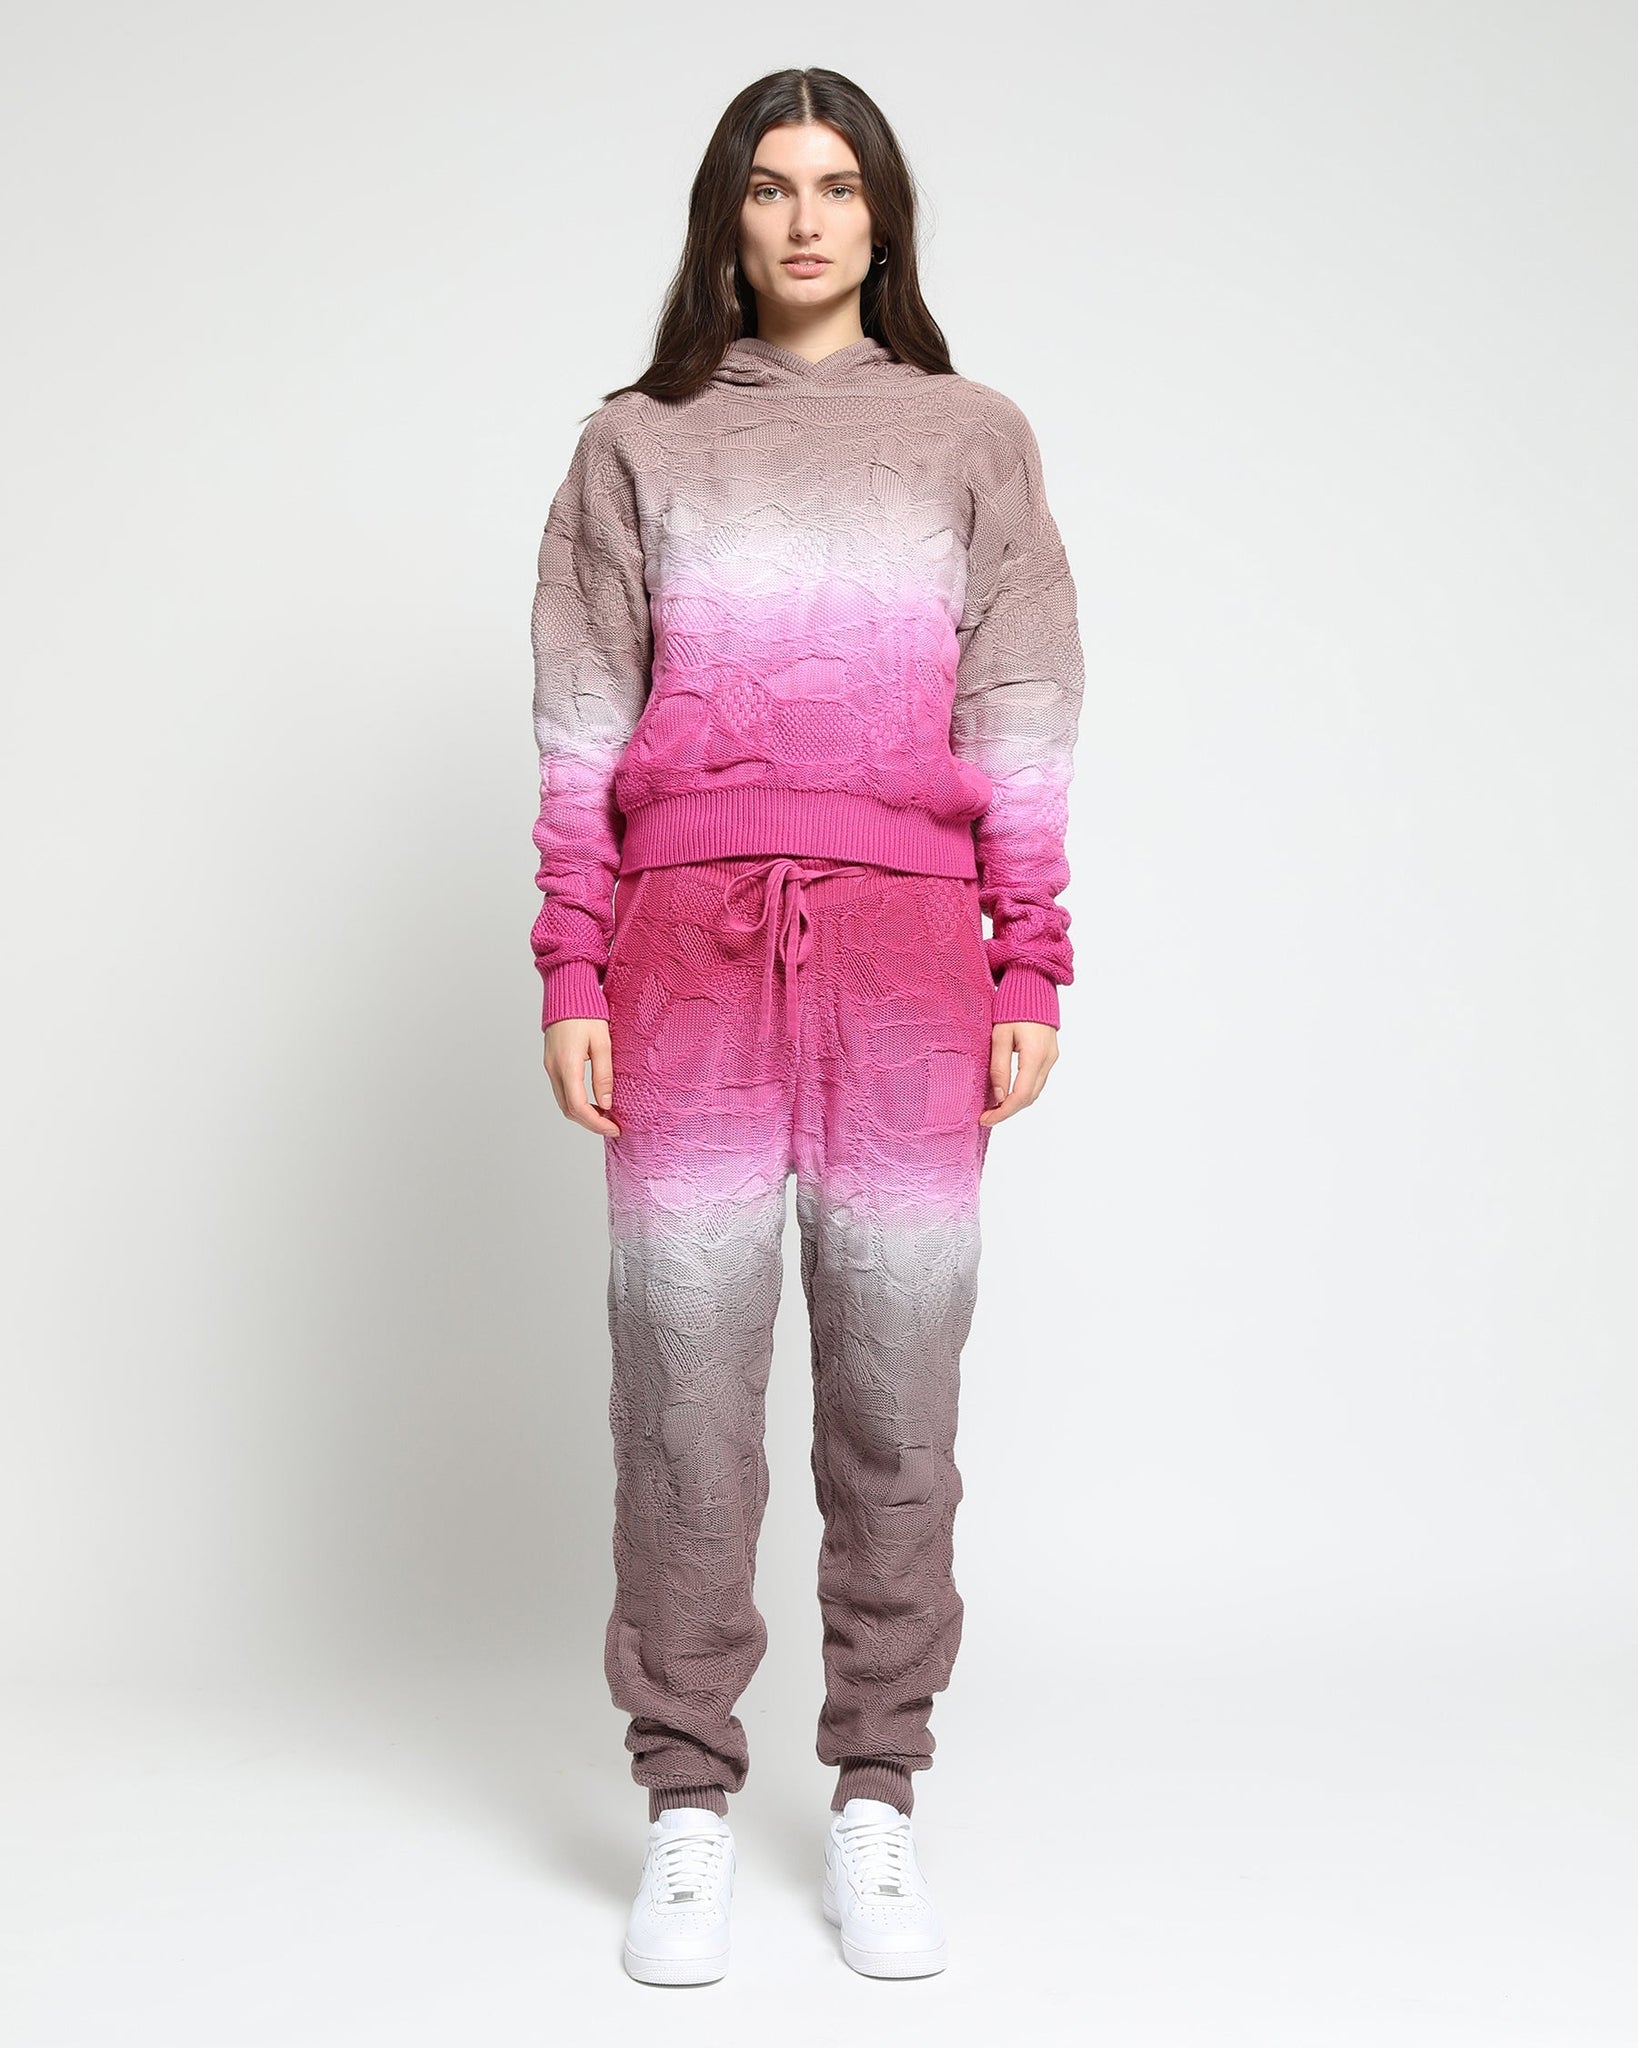 Crossover Netting Sweater Dip Dye Hoodie - twentytees